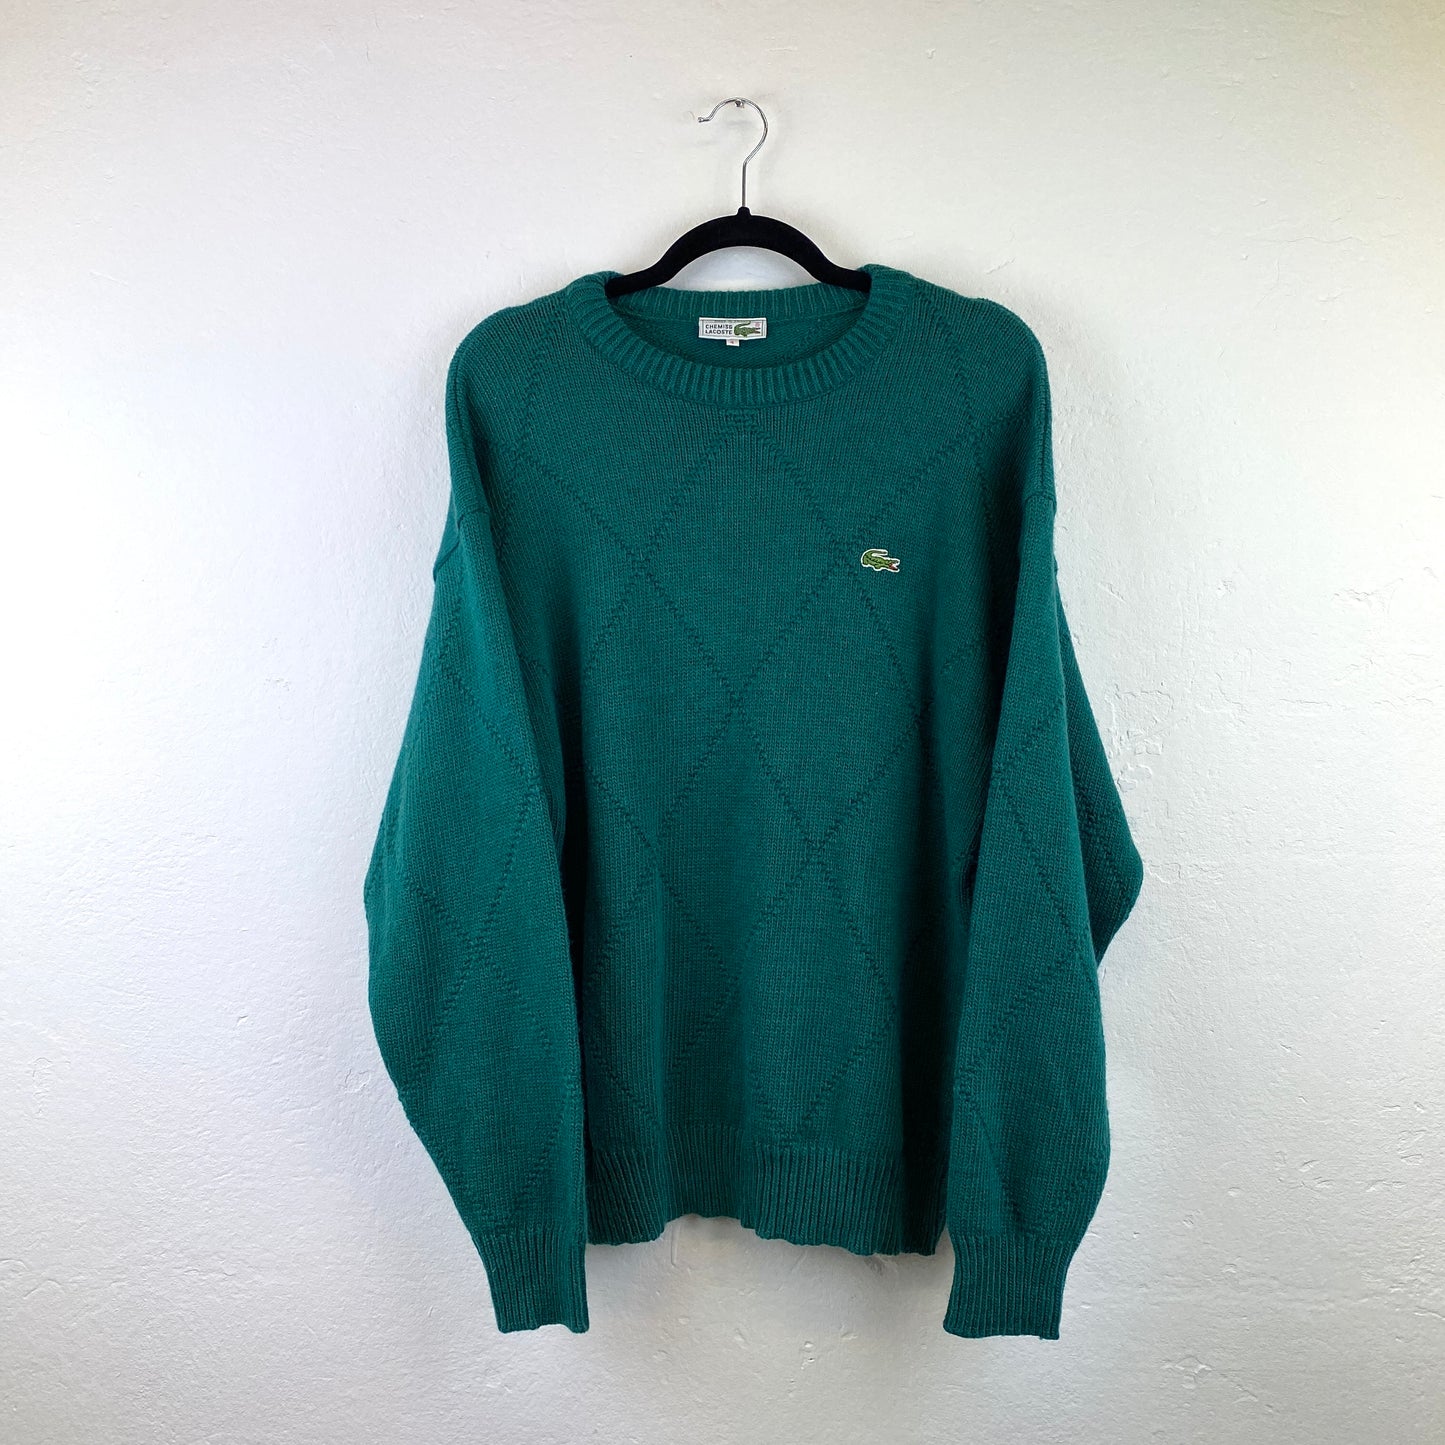 Lacoste knit sweater (L)